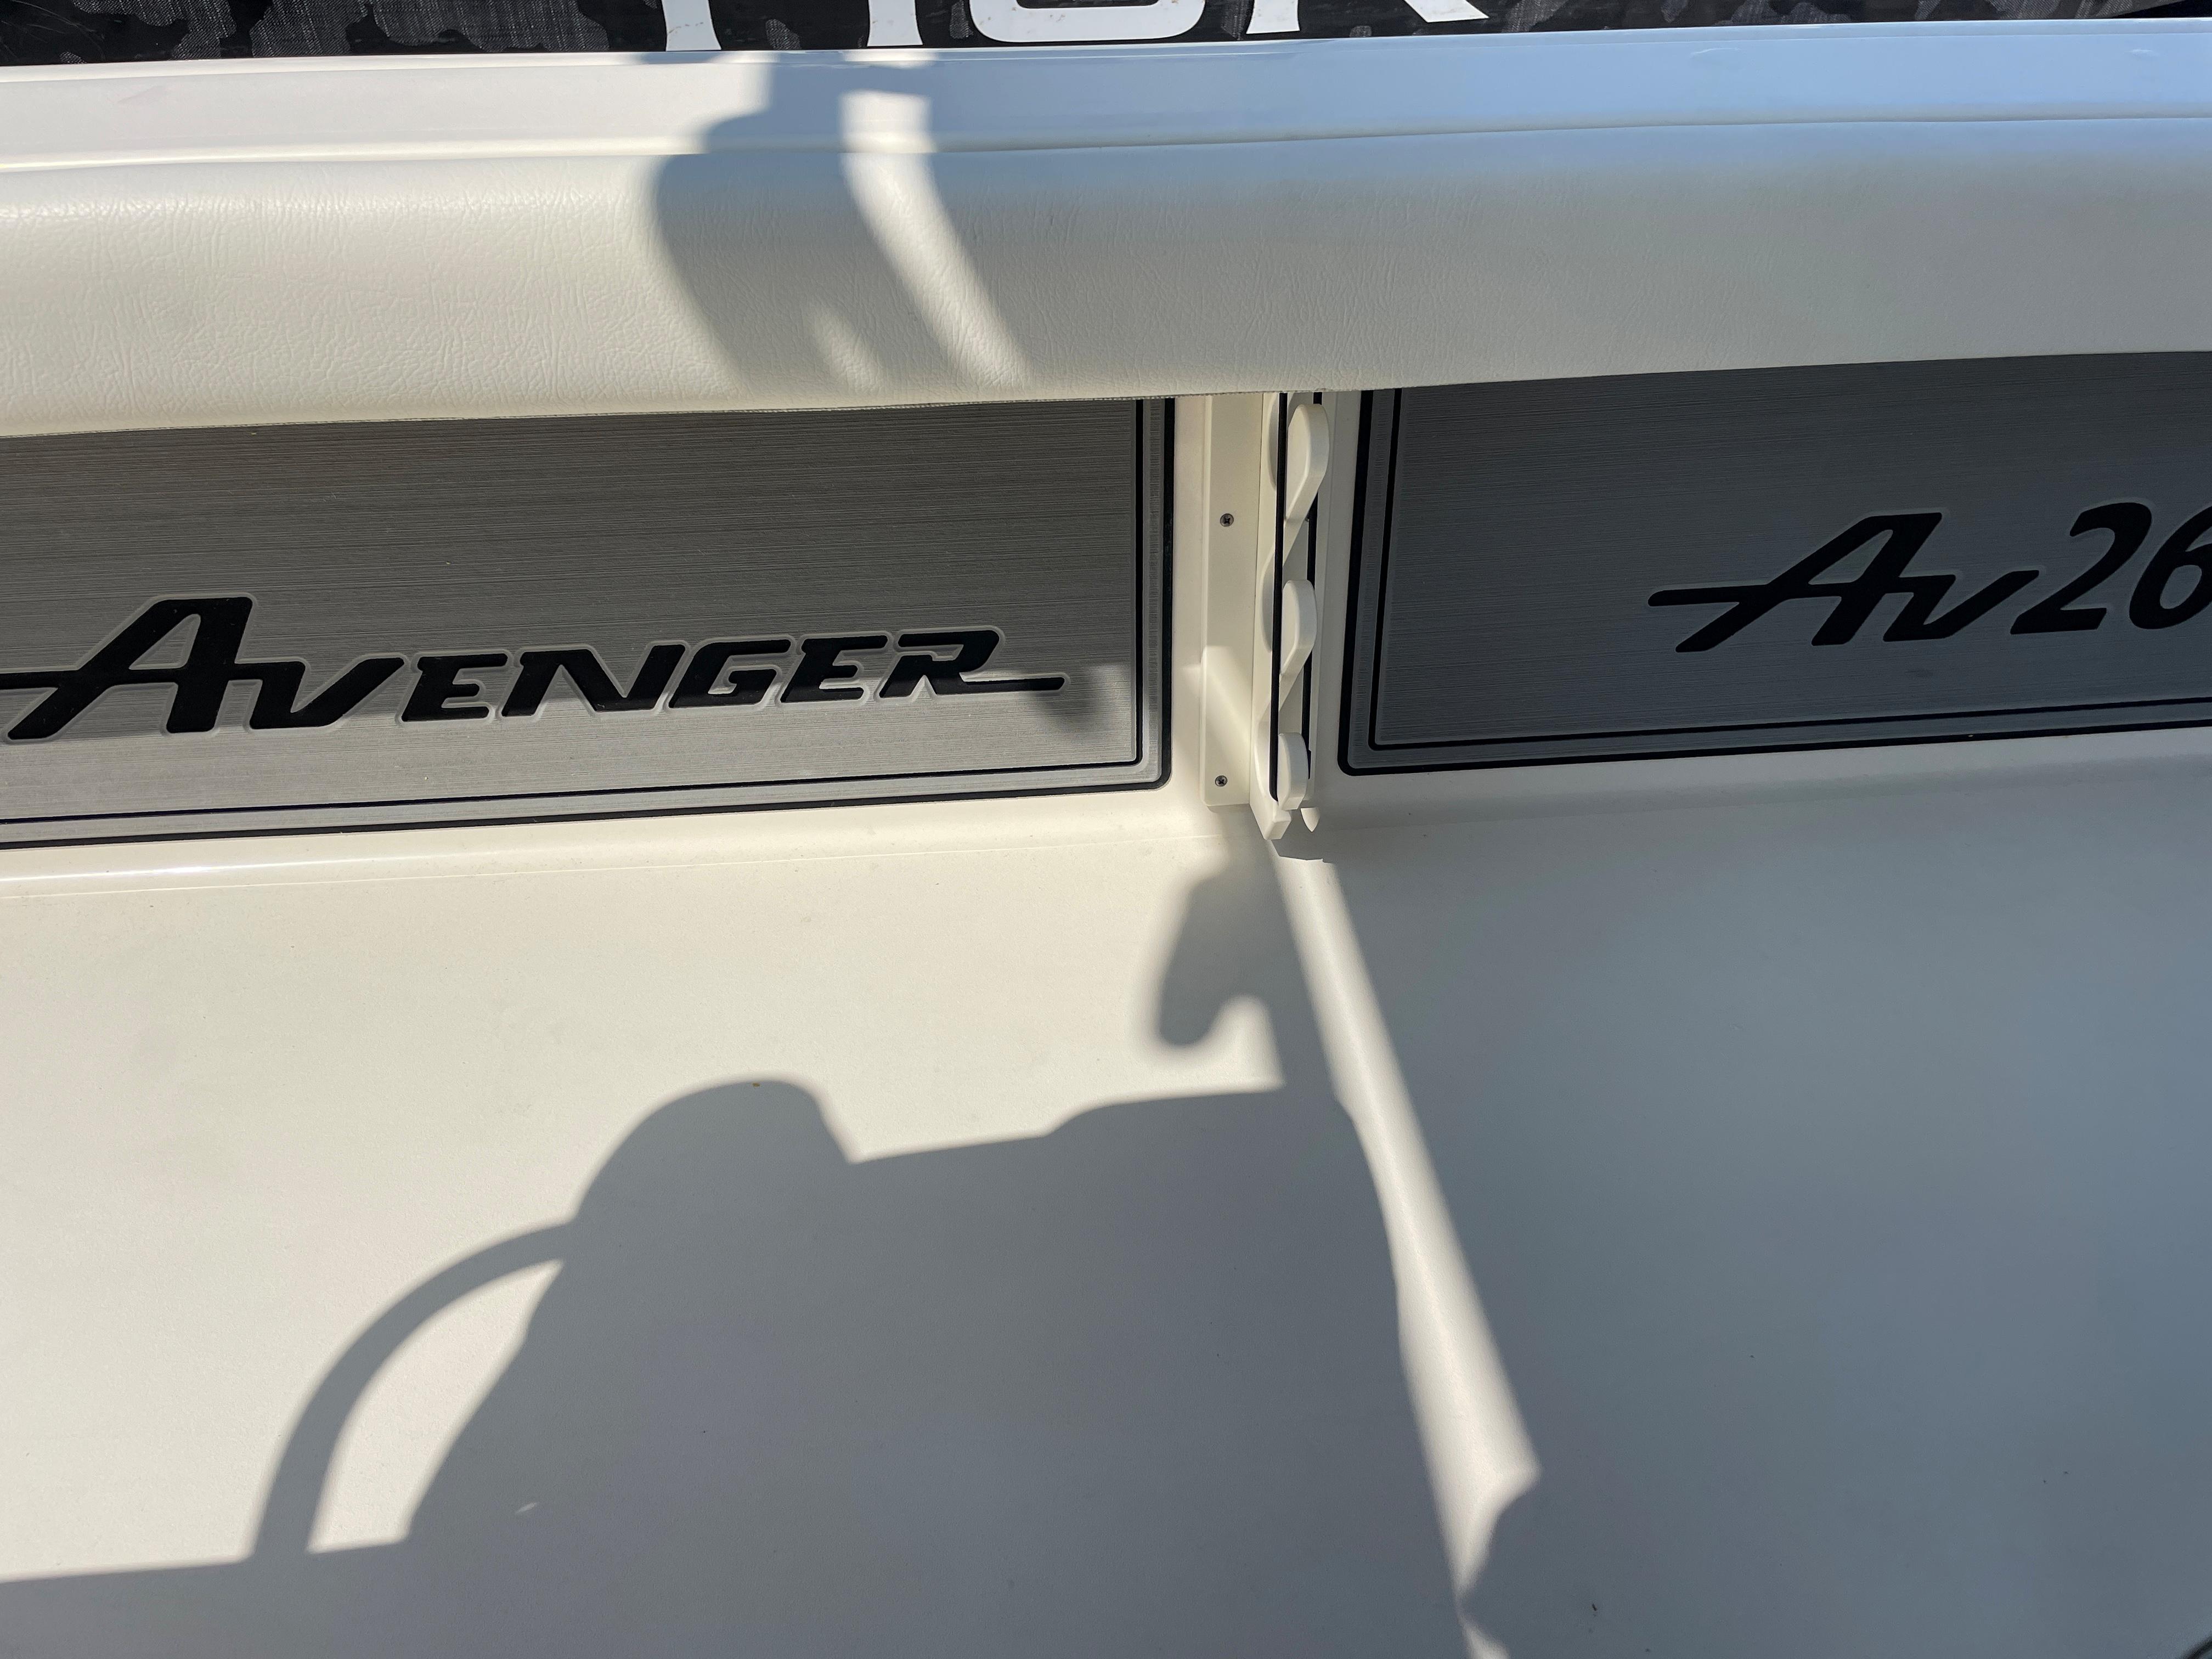 Avenger AV 26 Bay Boat - Under gunwale rod holders